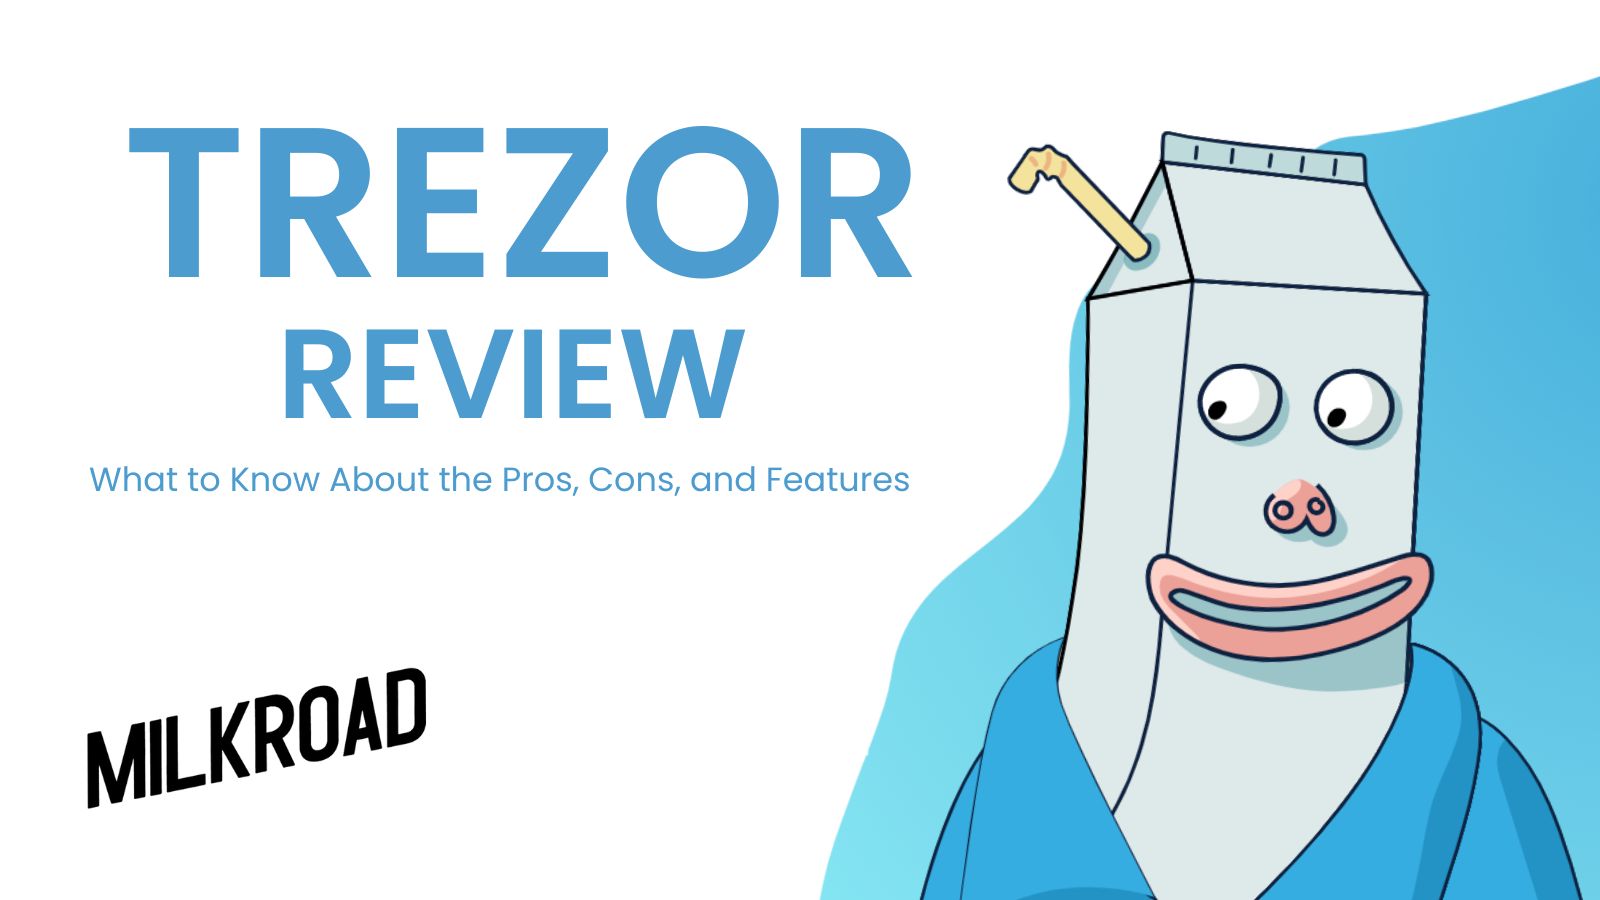 Trezor Review